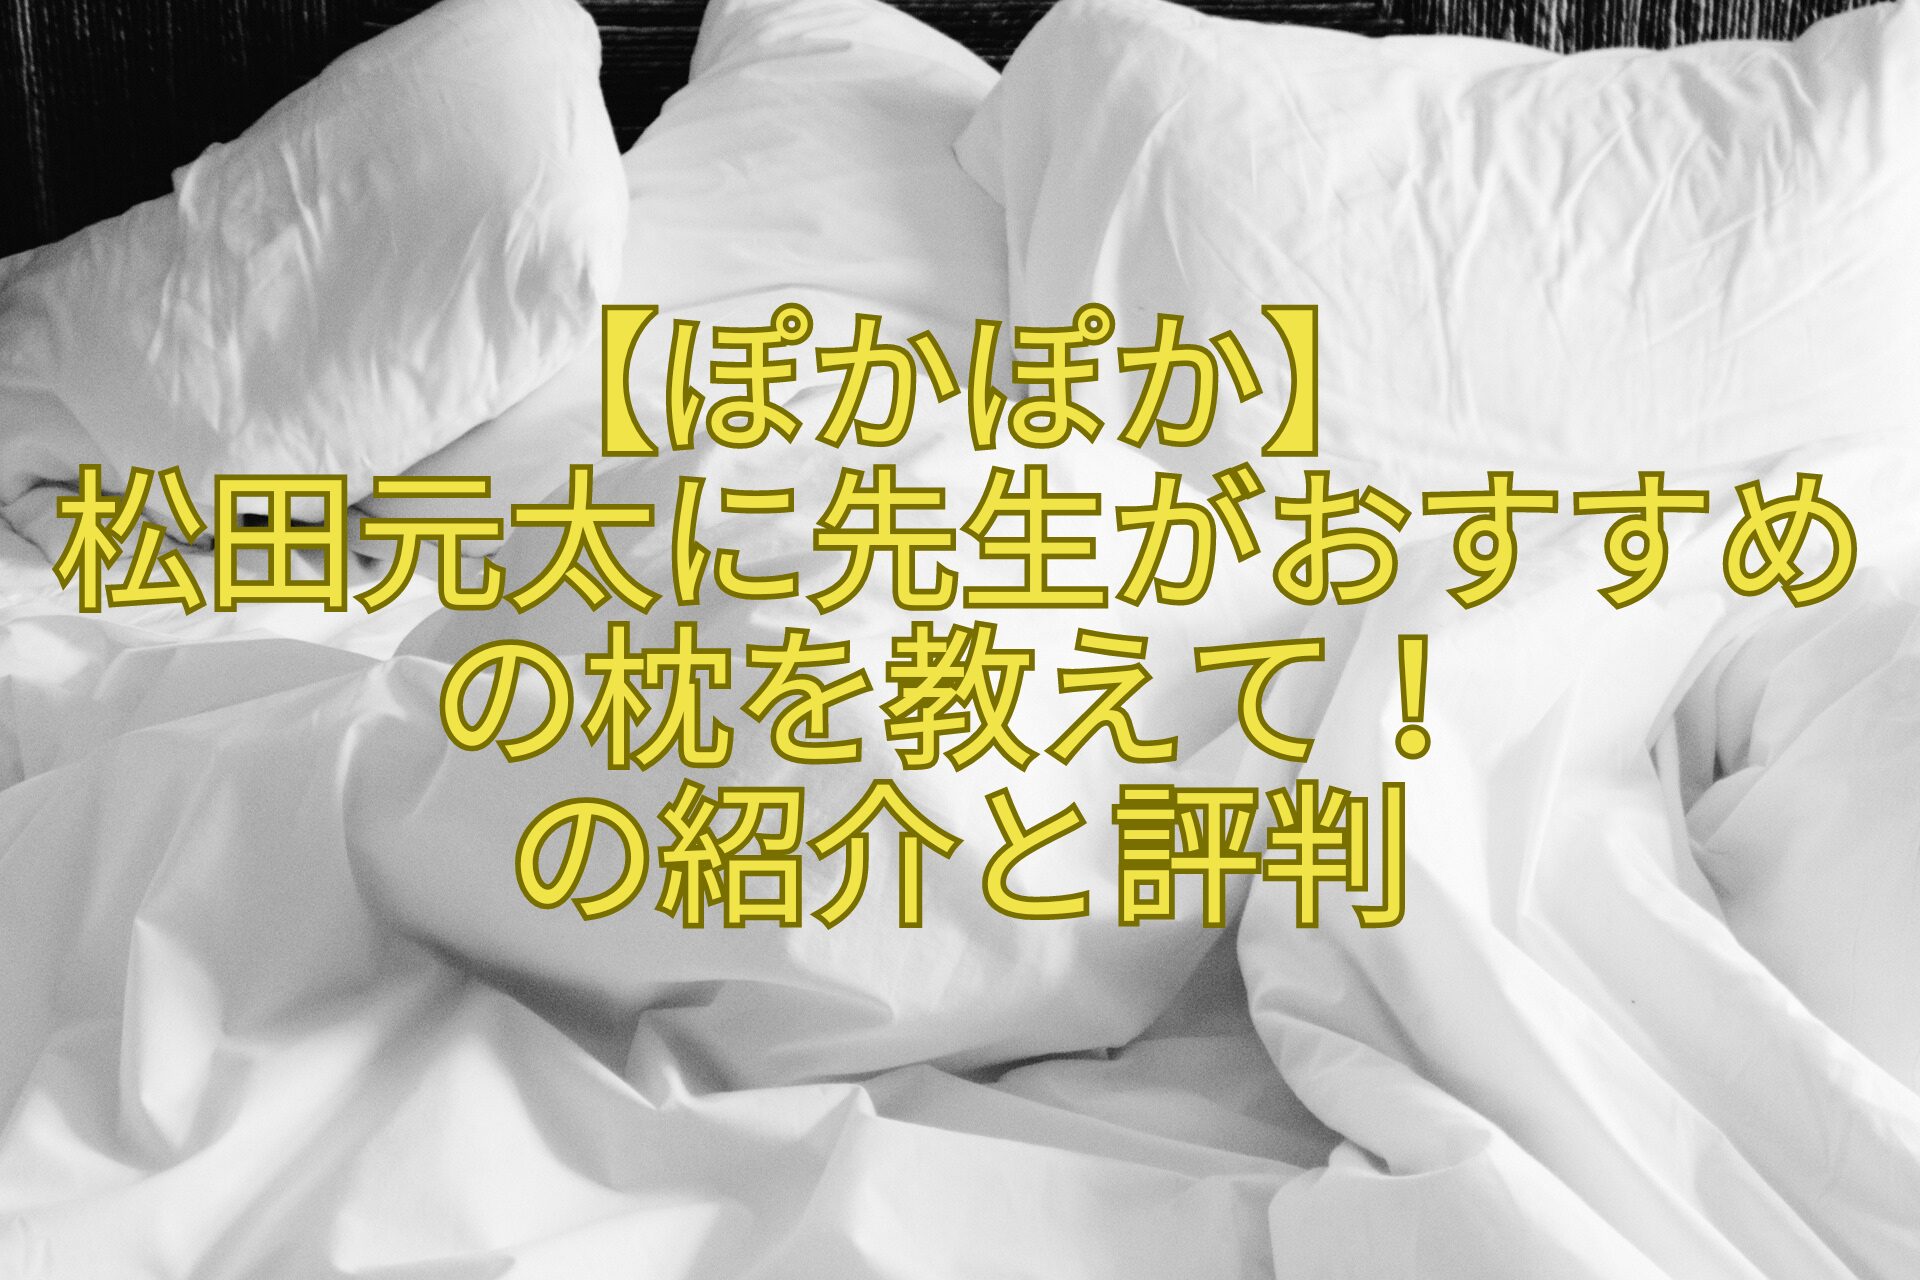 【ぽかぽか】-松田元太に先生がおすすめの枕を教えて！-の紹介と評判